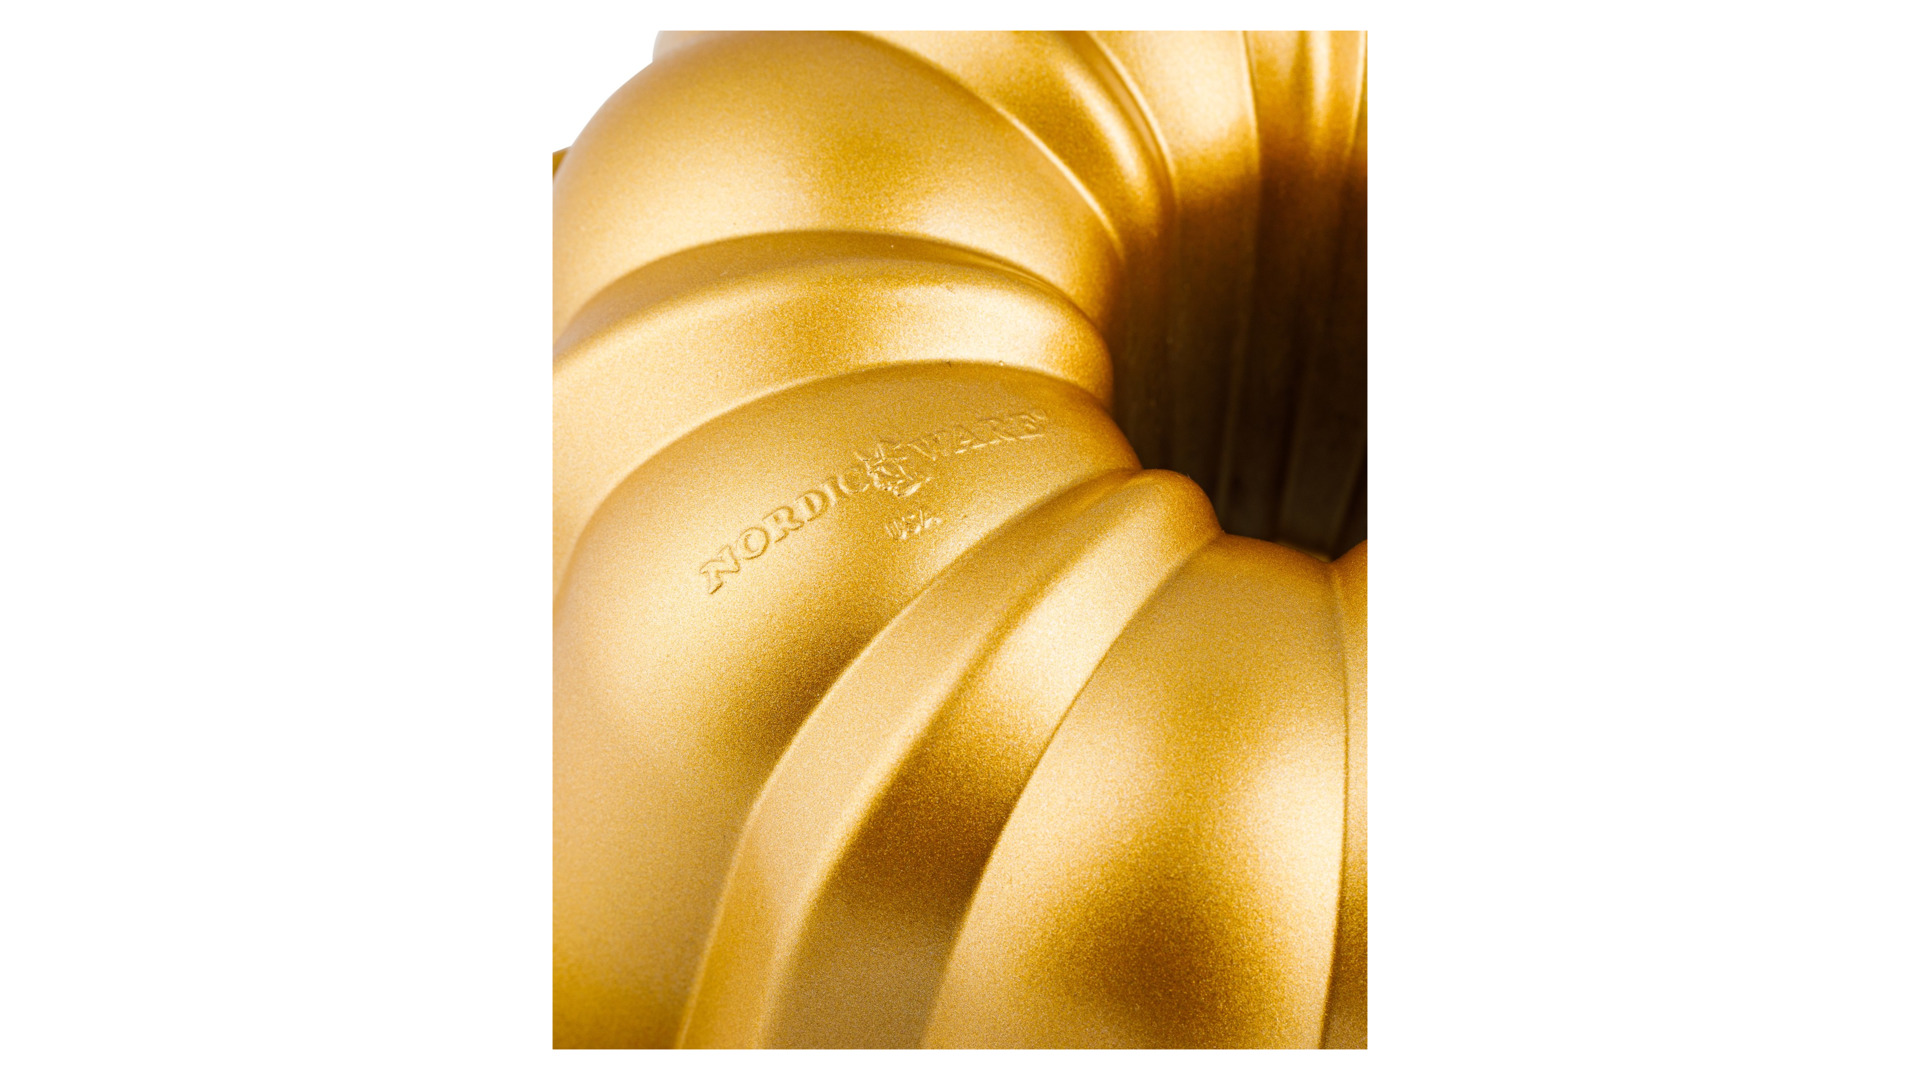 Форма для выпечки 3D Nordic Ware Праздничный пирог 1,4 л, литой алюминий, золотая